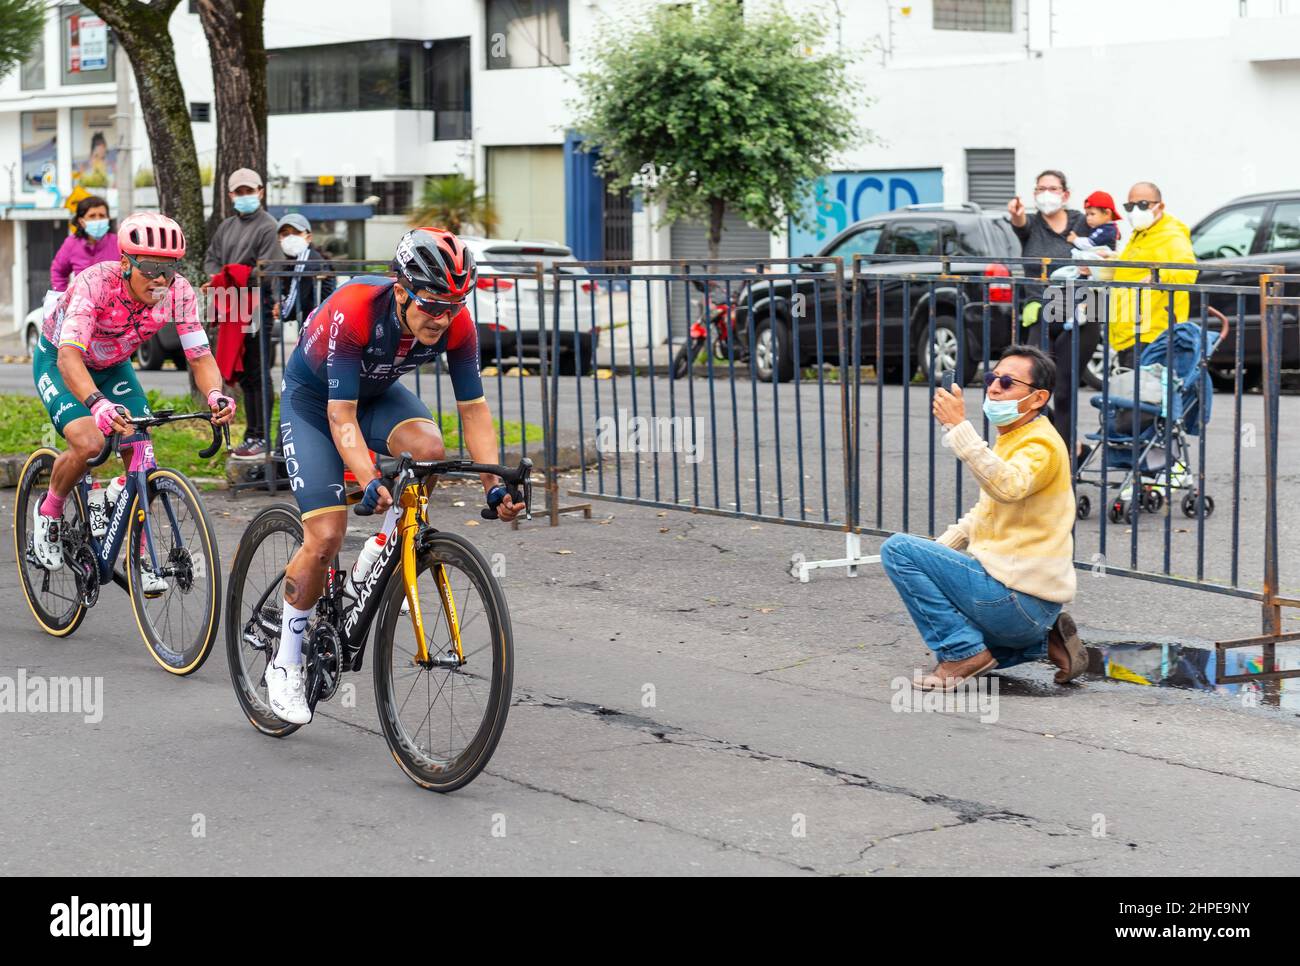 Richard Carapaz, ciclista ecuatoriano y medallista de oro en las olimpiadas  de Tokio terminando segundo de la carrera de los hombres en bicicleta de  oro en Ecuador, Quito, Ecuador Fotografía de stock -